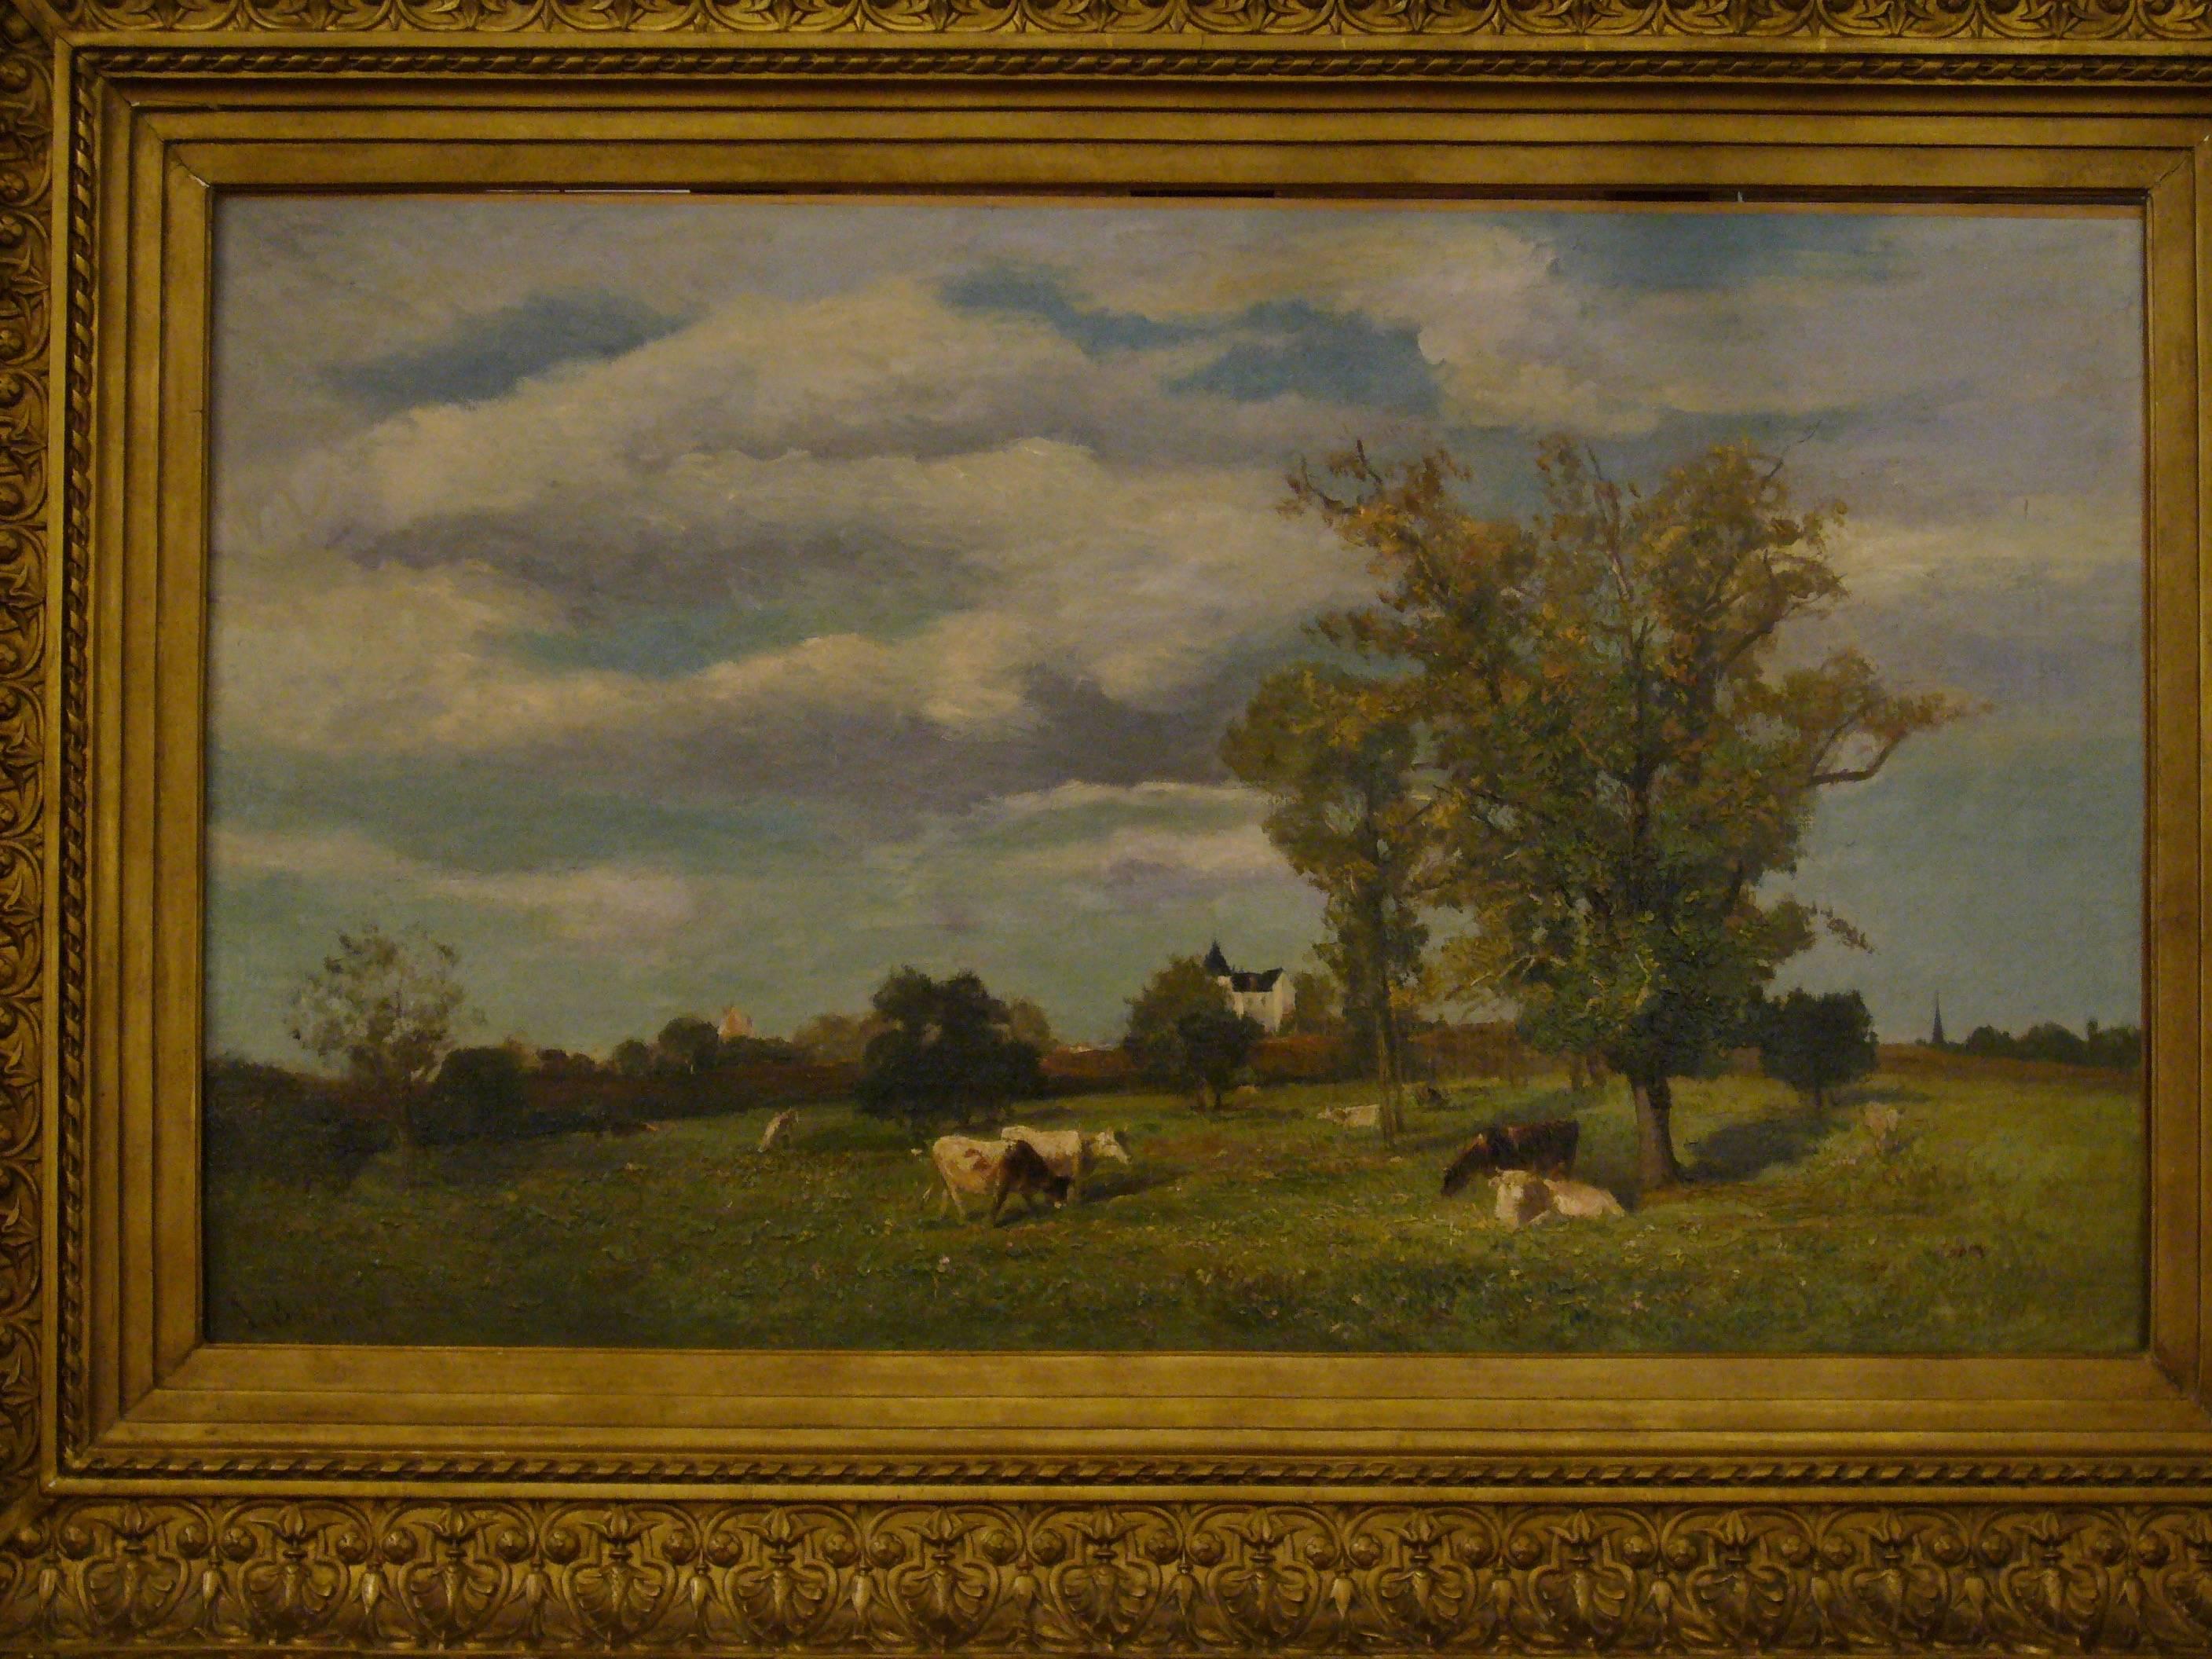 Vaches dans un paysage de printemps près d'un chateau - 19th Century Landscape  For Sale 1